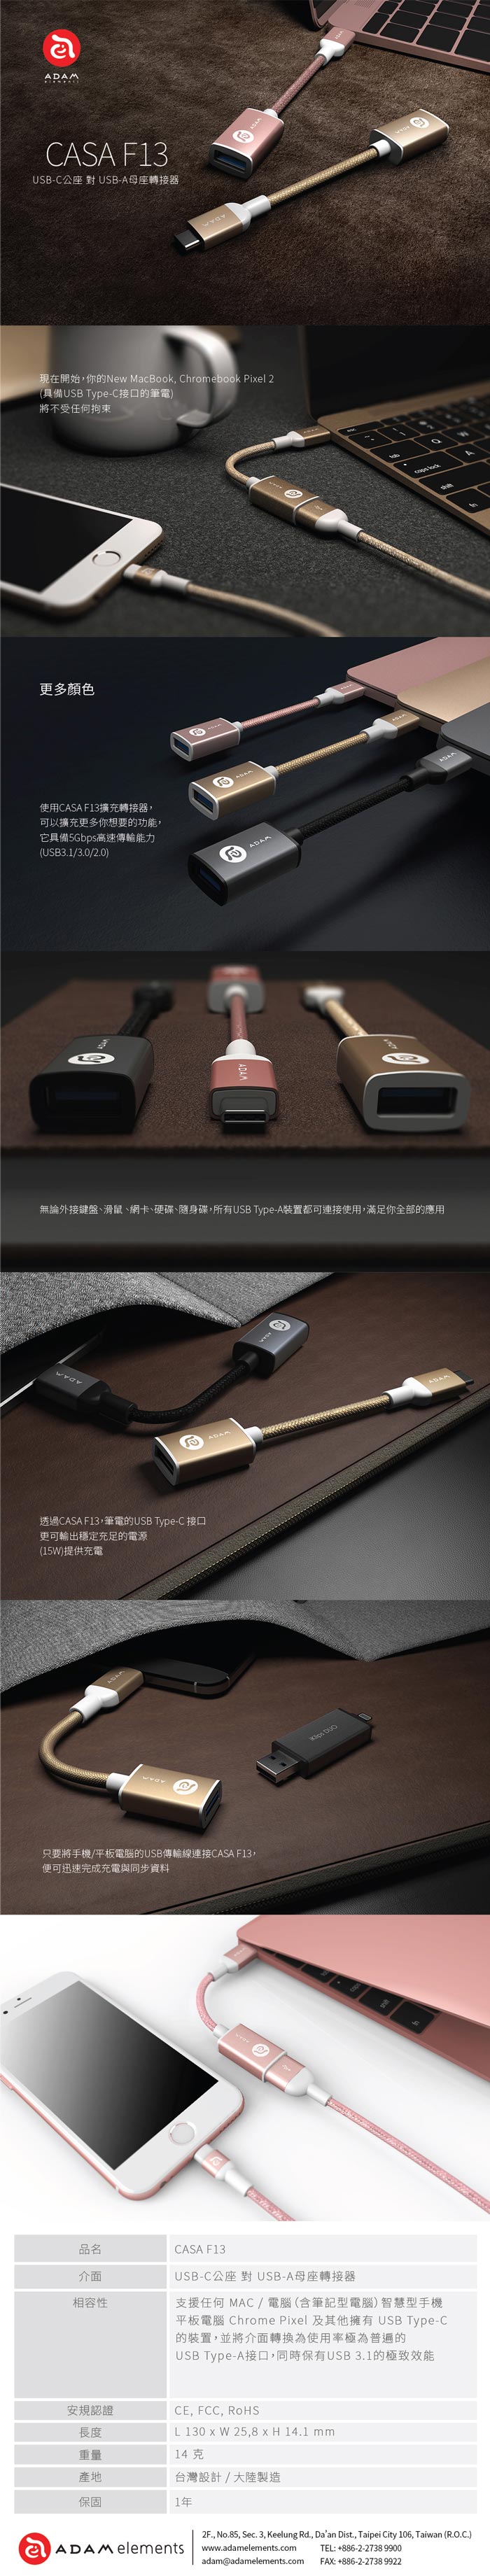 亞果元素 CASA F13 USB Type-C 對 USB 轉接器(玫瑰金)